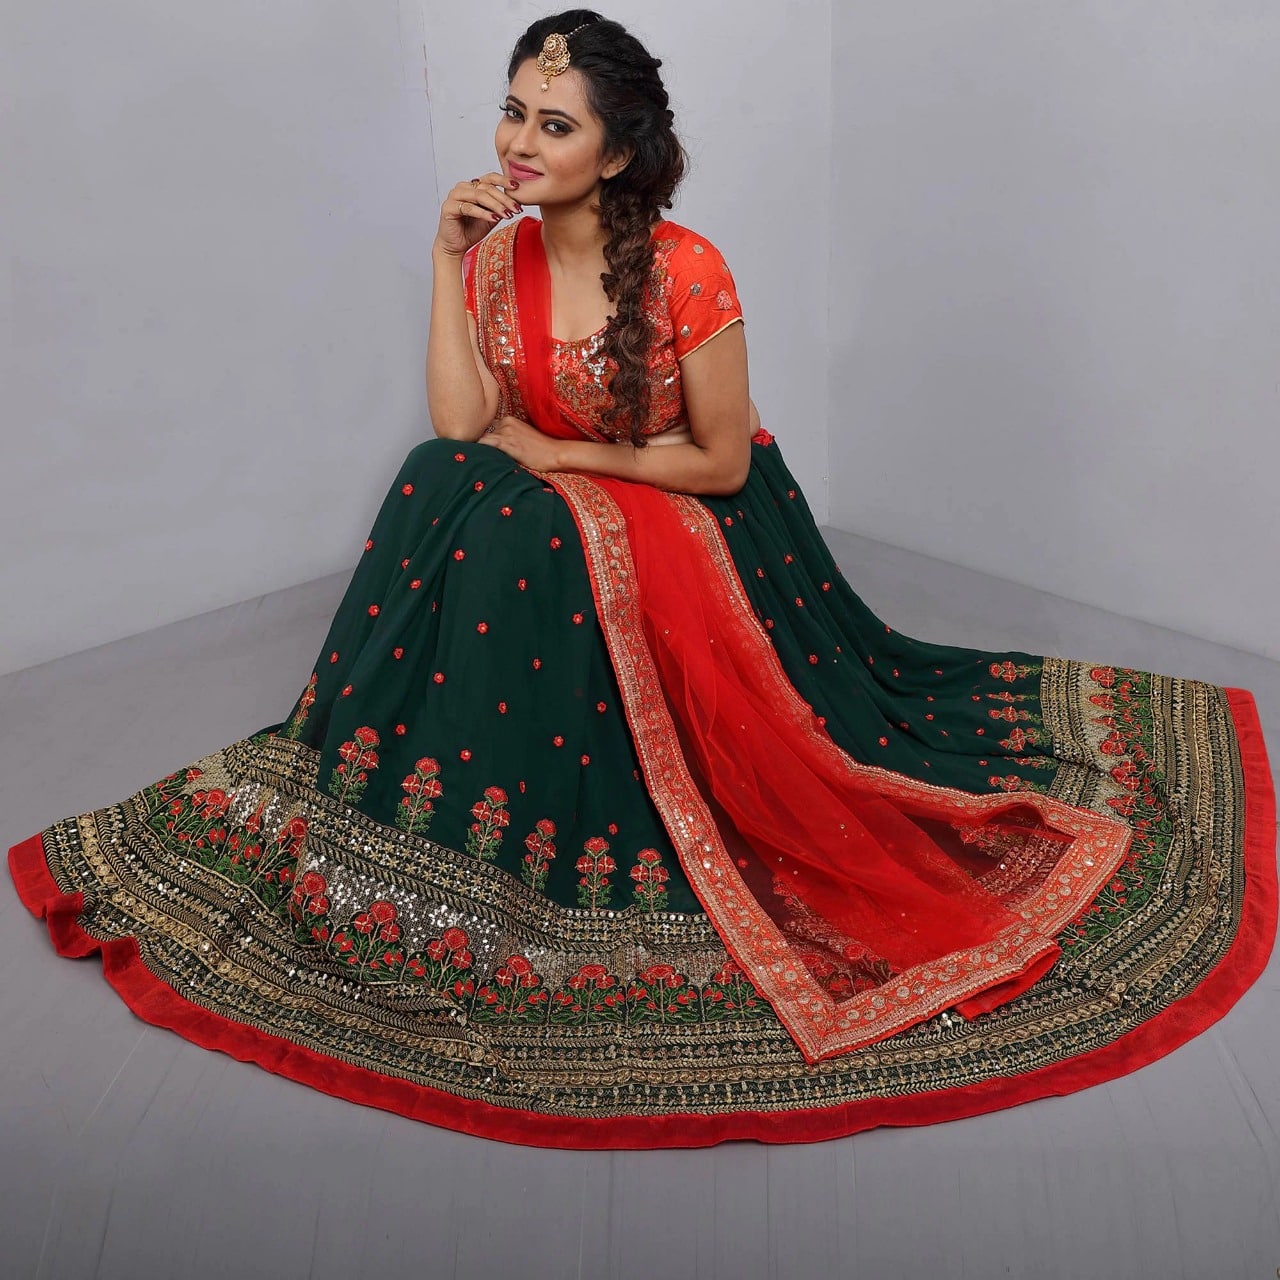 Pakistani Bridal Wear Red Blouse Lehenga - Mint Green Dupatta | Pakistani  bridal wear, Combination dresses, Pakistani bridal